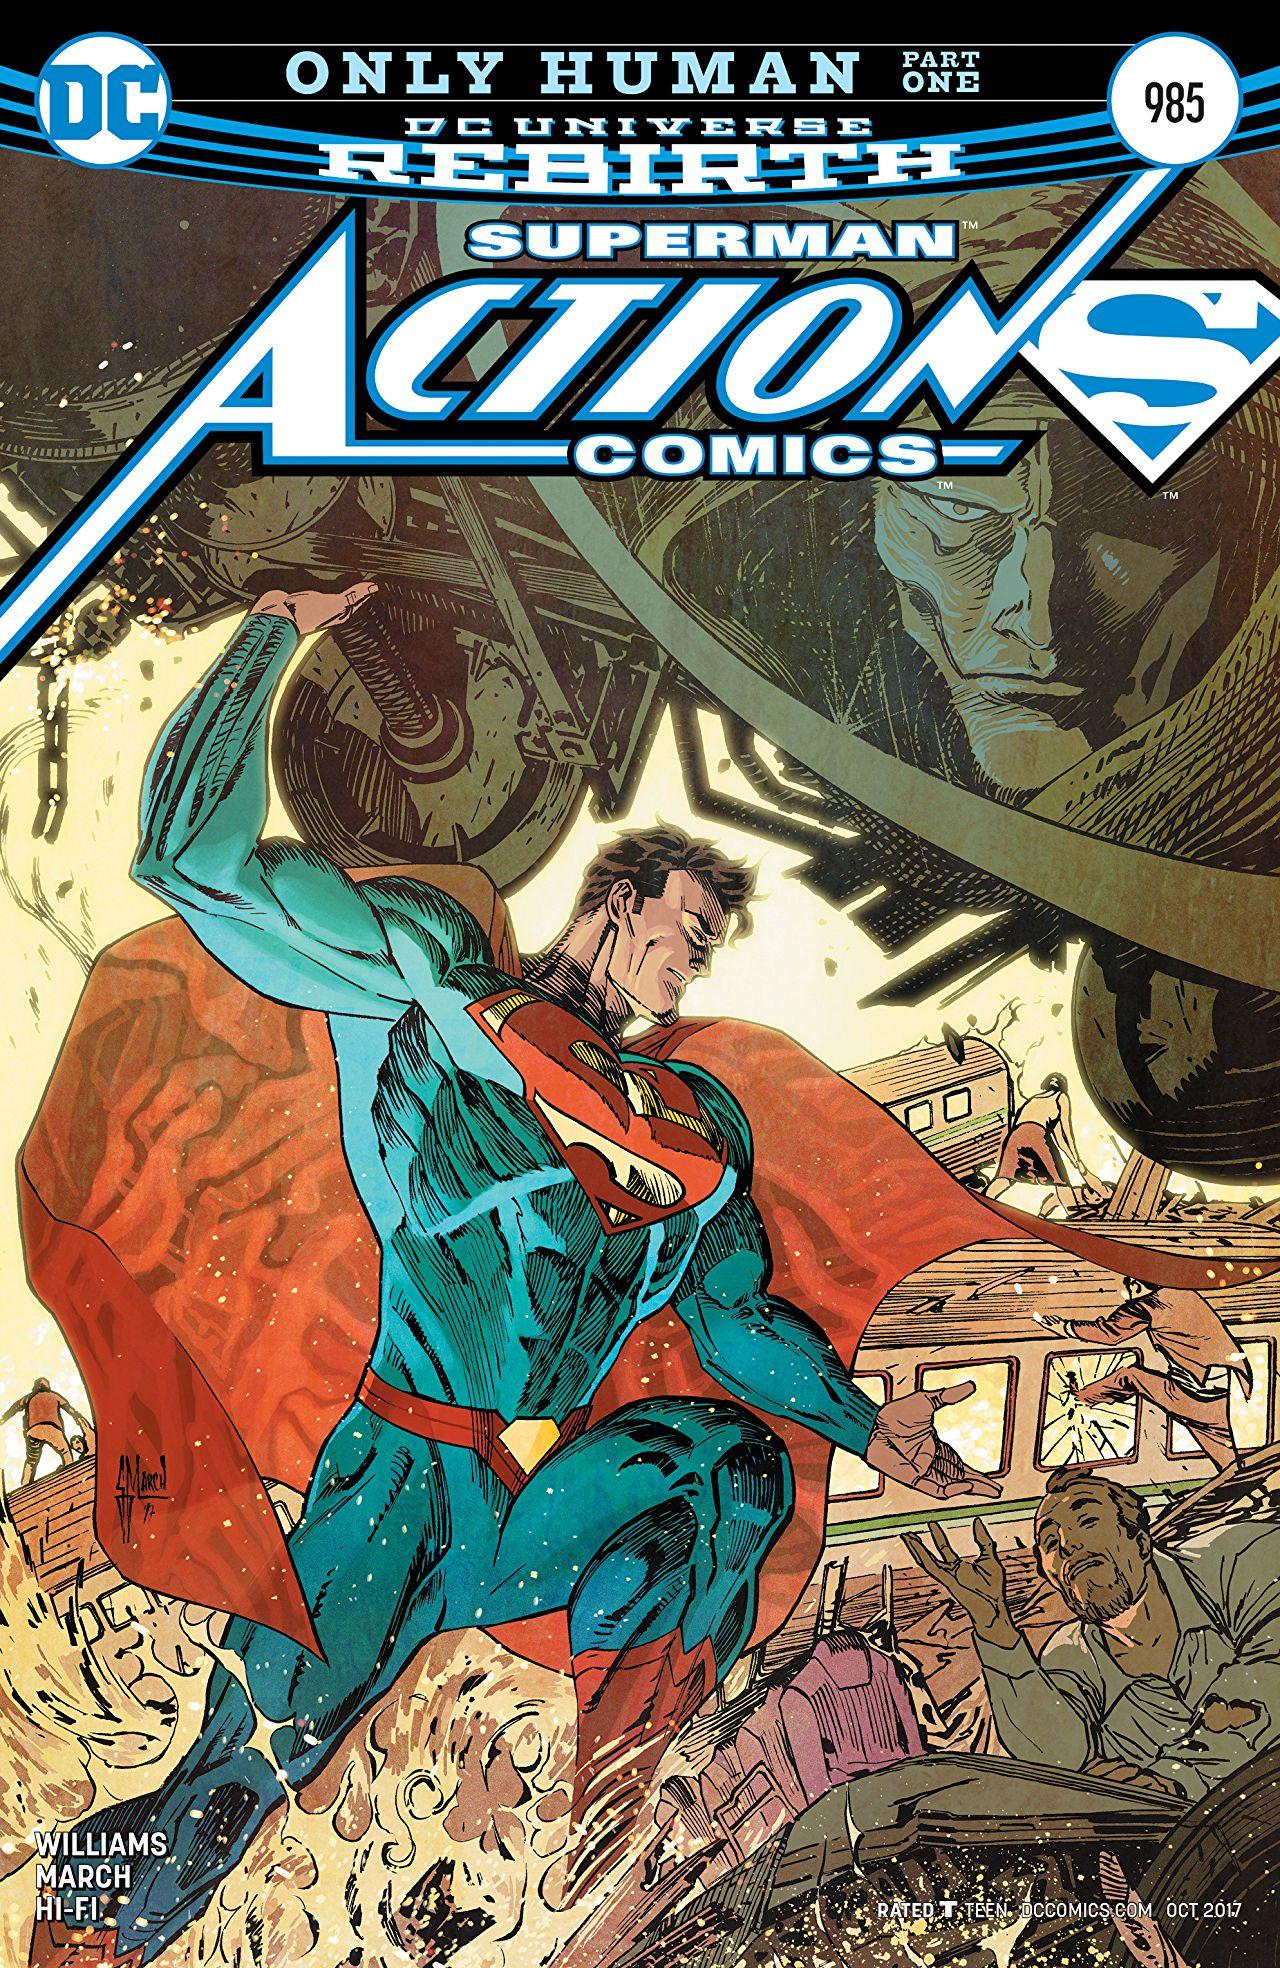 Action Comics Vol. 1 #985